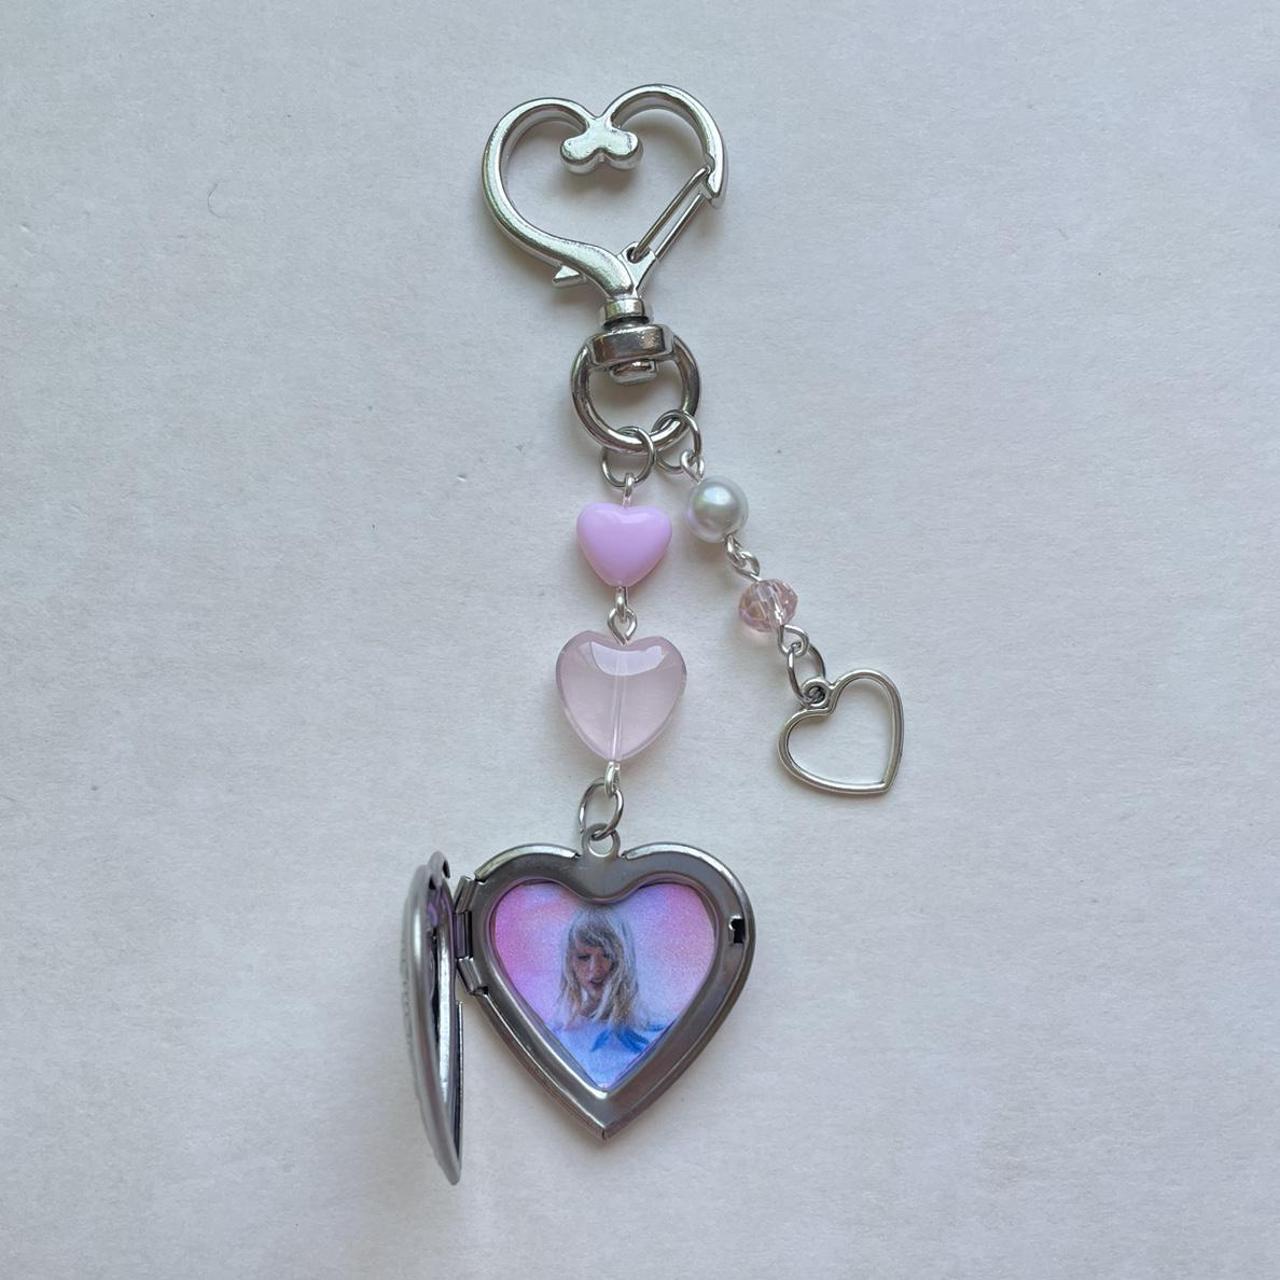 taylor swift's lover locket heart keychain ☆... - Depop